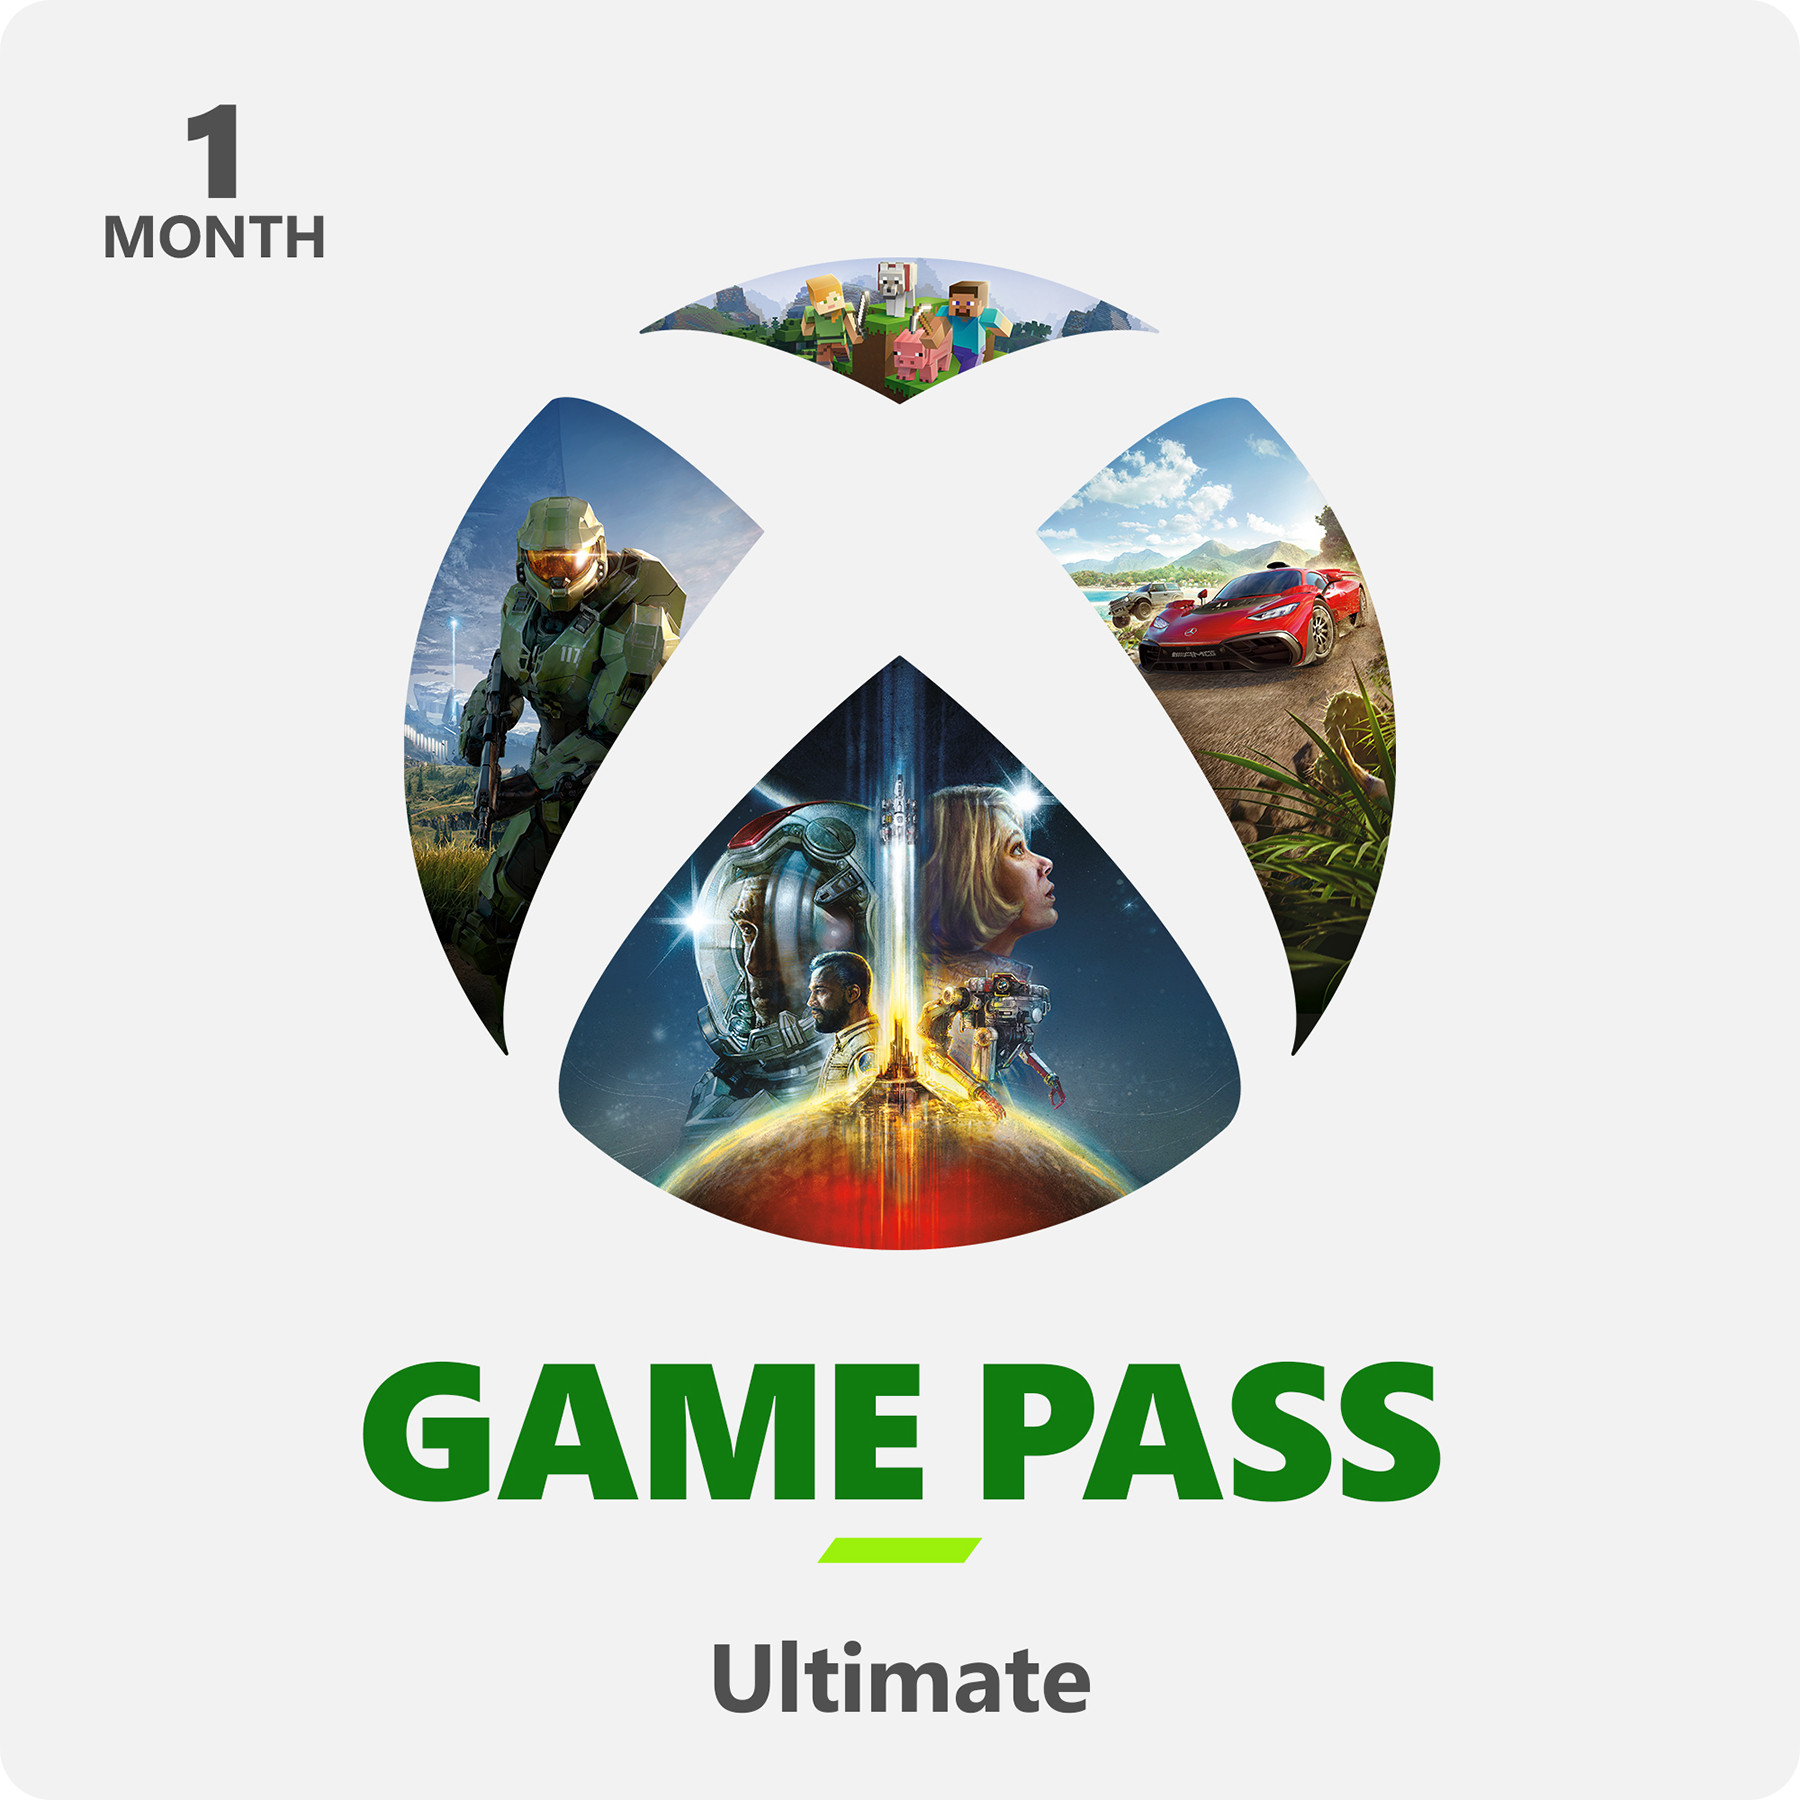 moederlijk Jong Vergevingsgezind Nedgame gameshop: Xbox Live Game Pass Ultimate Online - 1 Maand (PC Gaming)  kopen